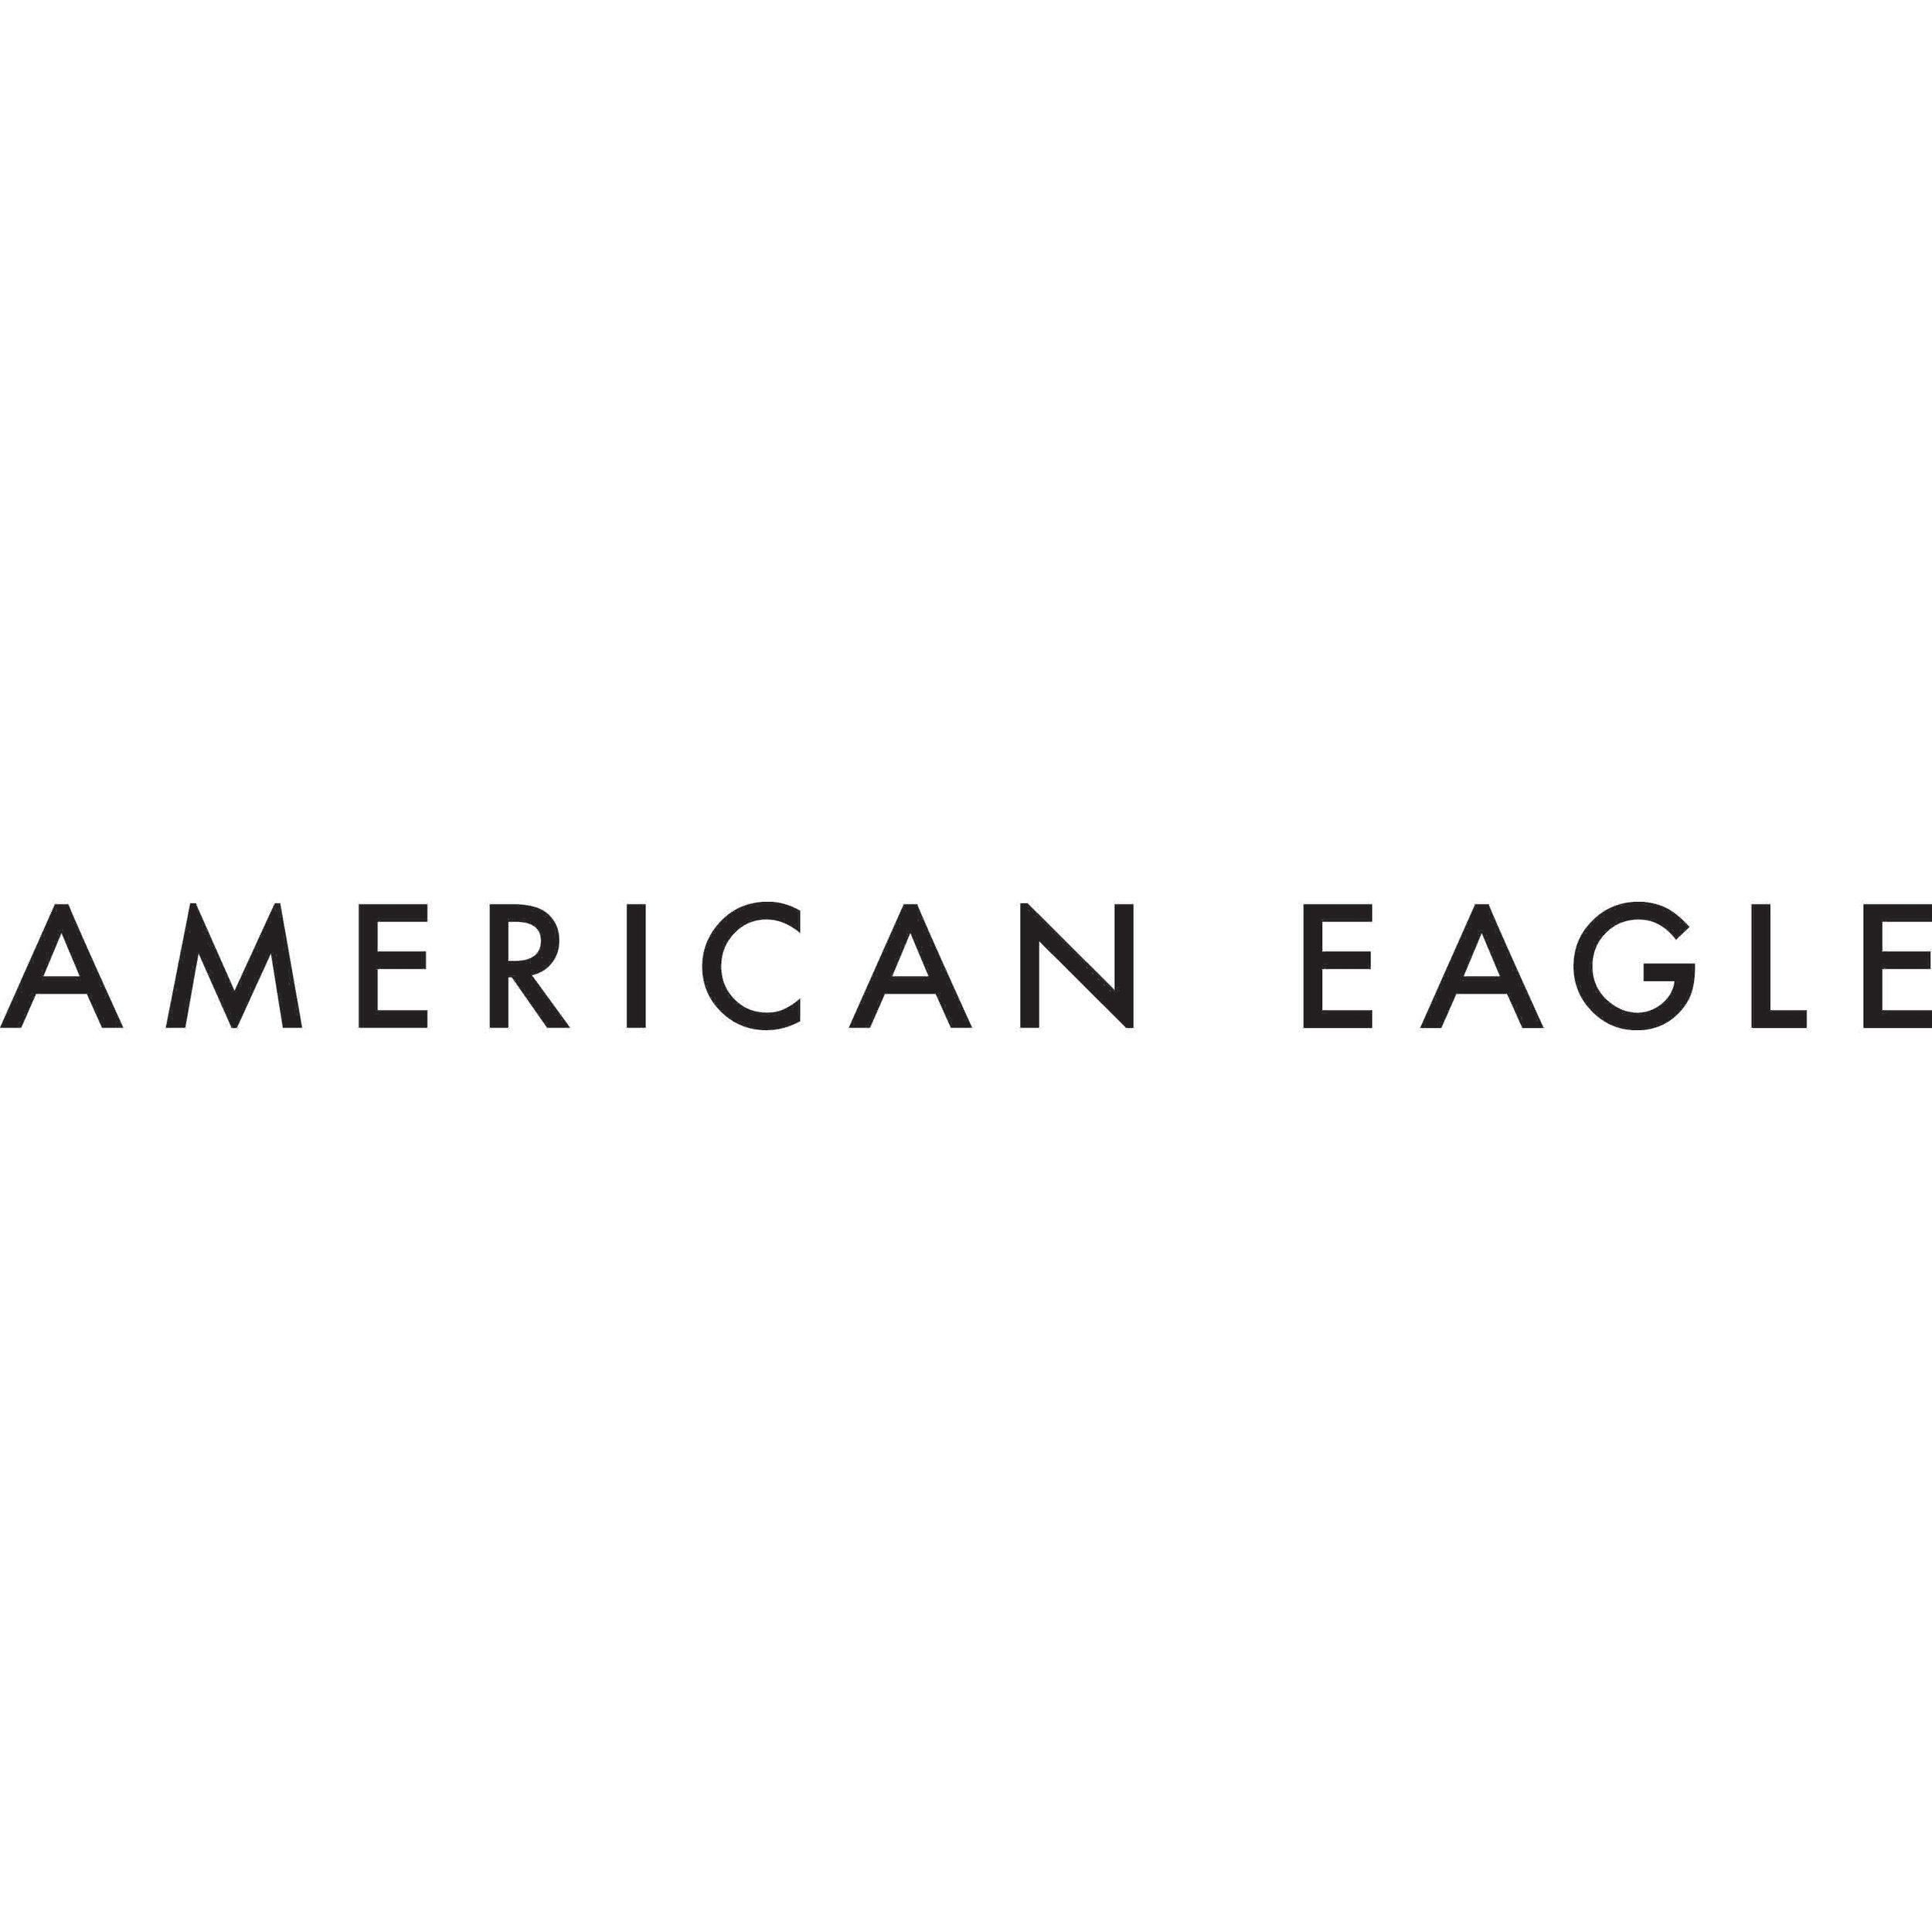 AMERCIAN-EAGLE-type-logo.jpeg